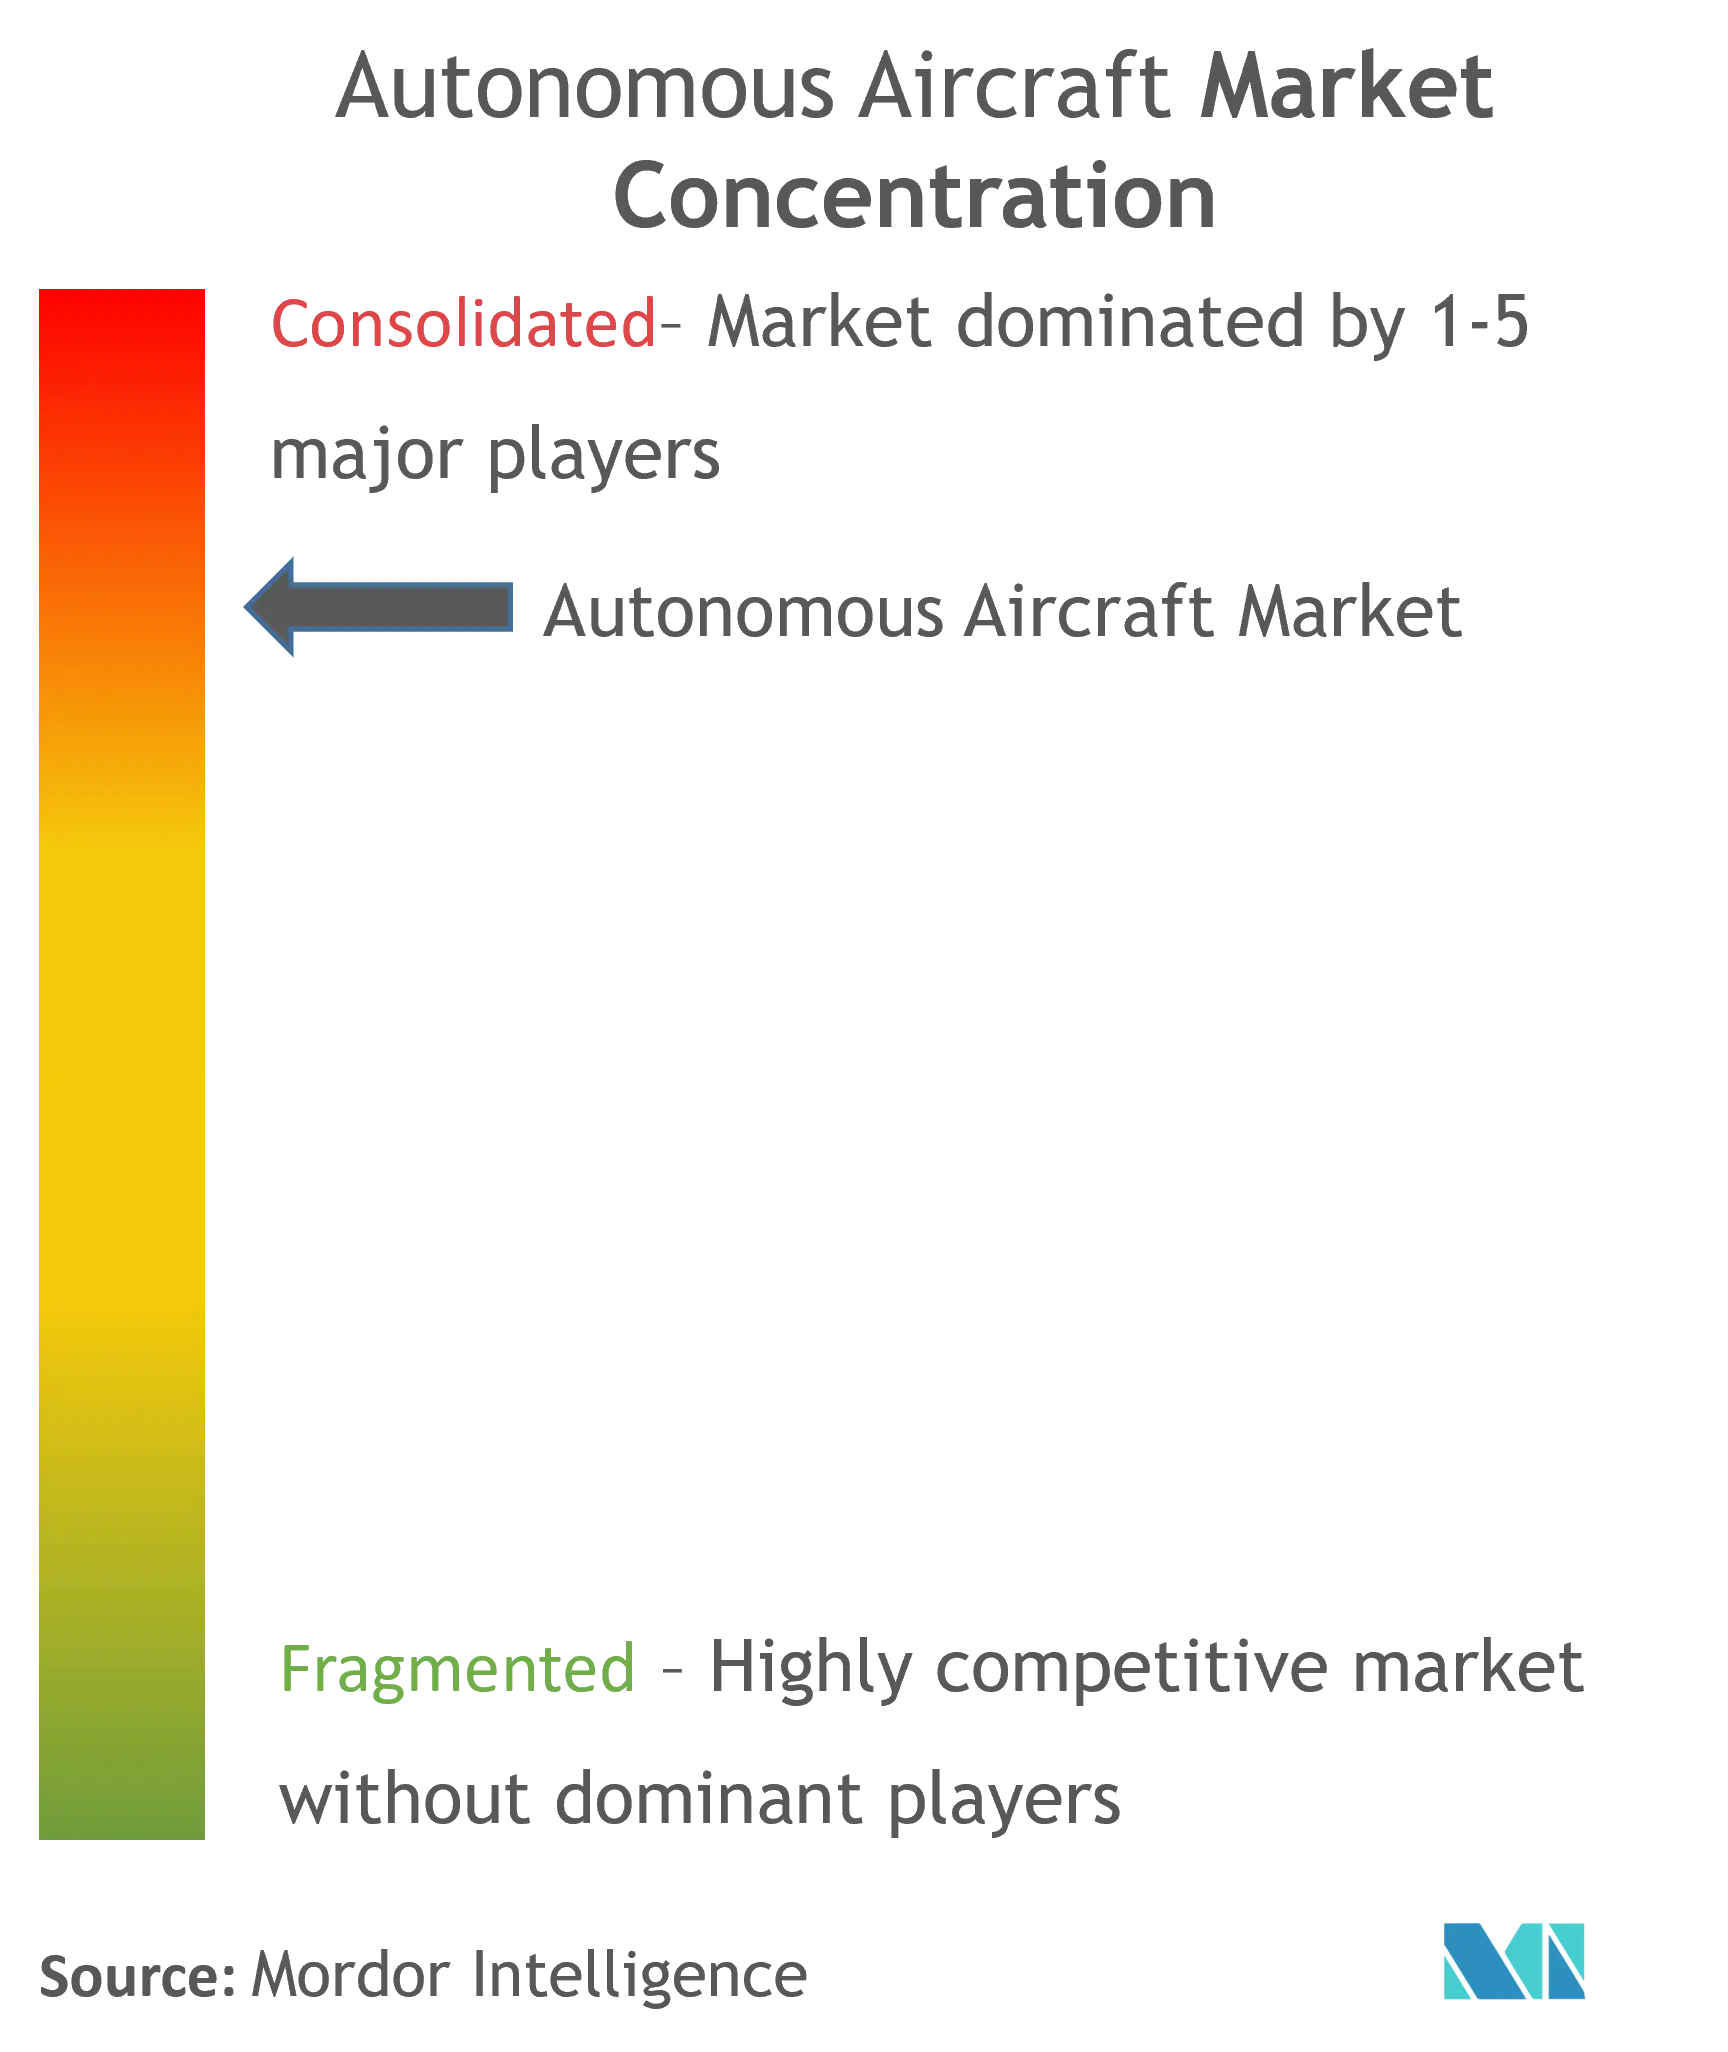 Avion autonomeConcentration du marché